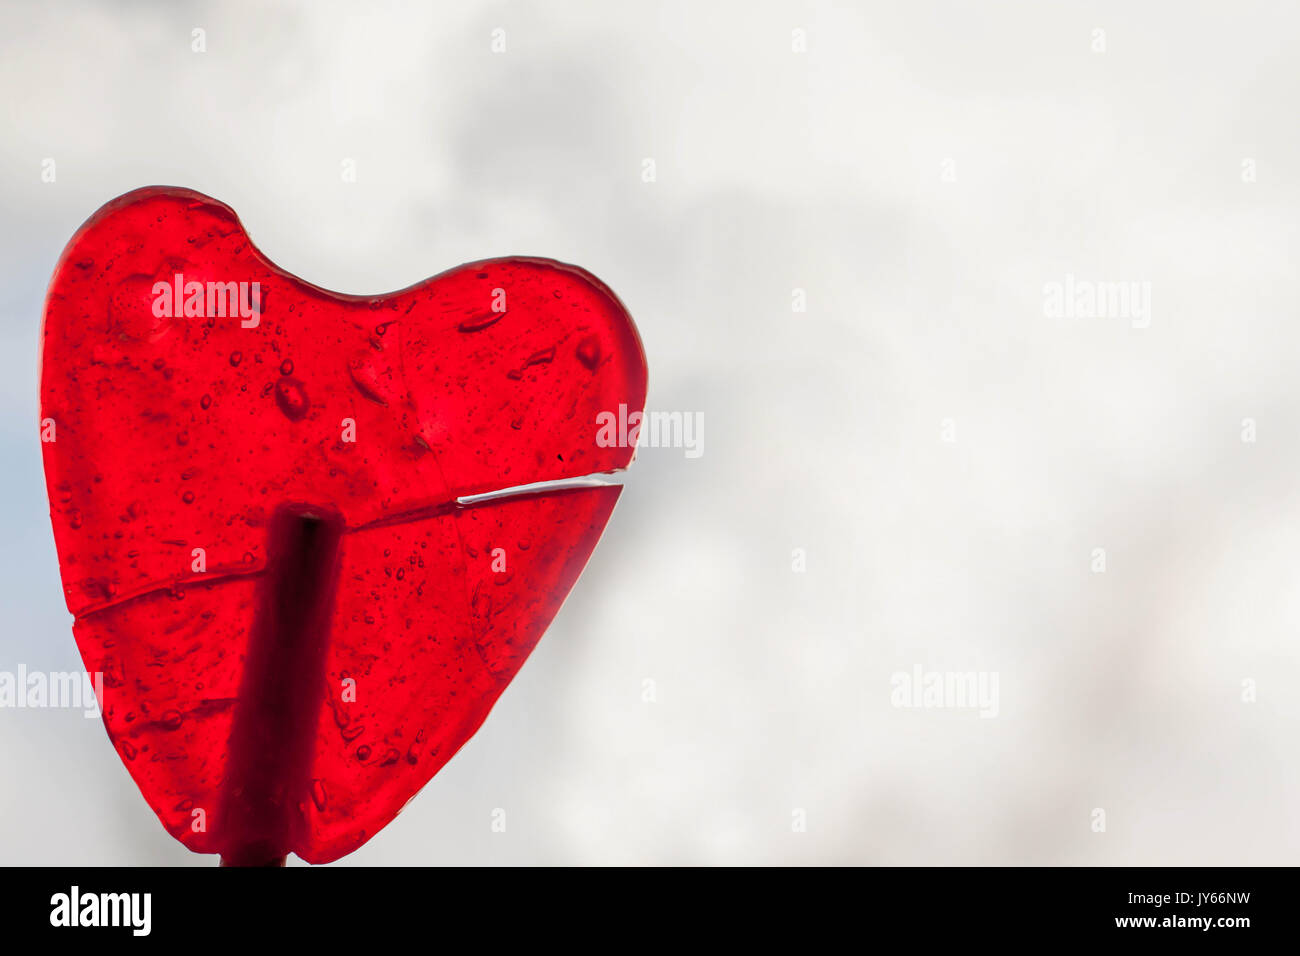 Doux, transparent et rouge en forme de coeur sucette close up en résumé fond blanc Banque D'Images